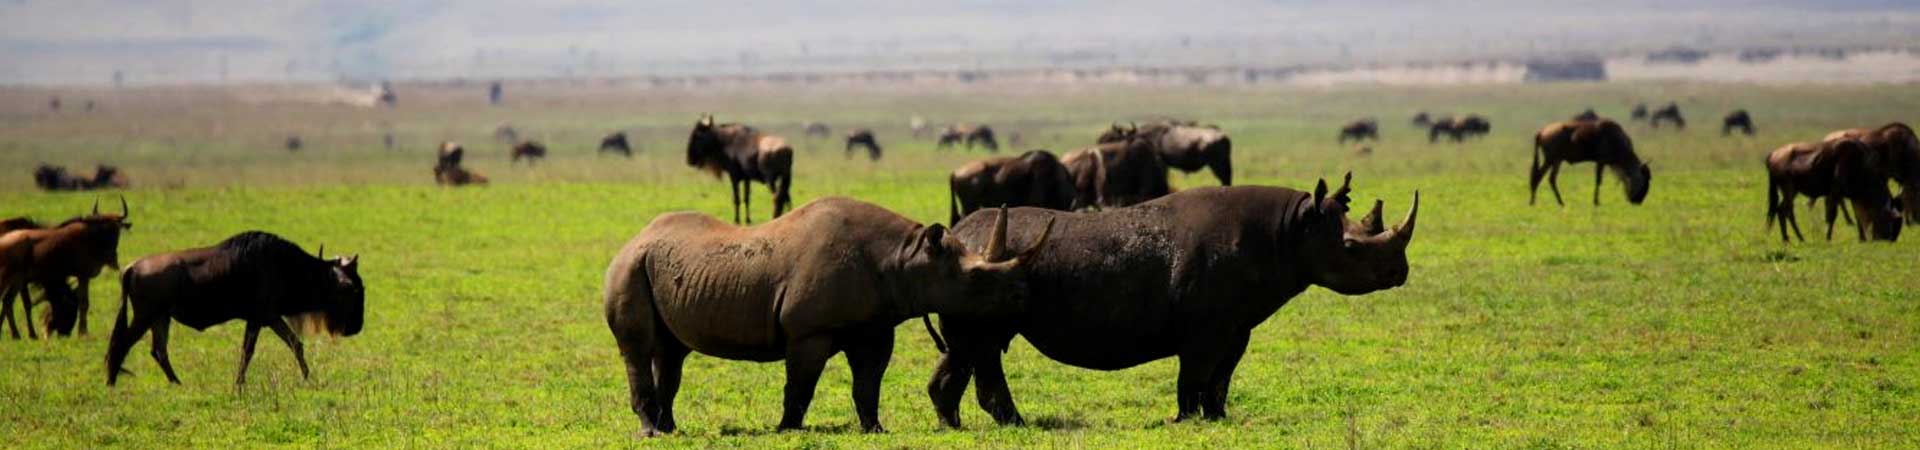 tanzania-safaris-ngorongoro